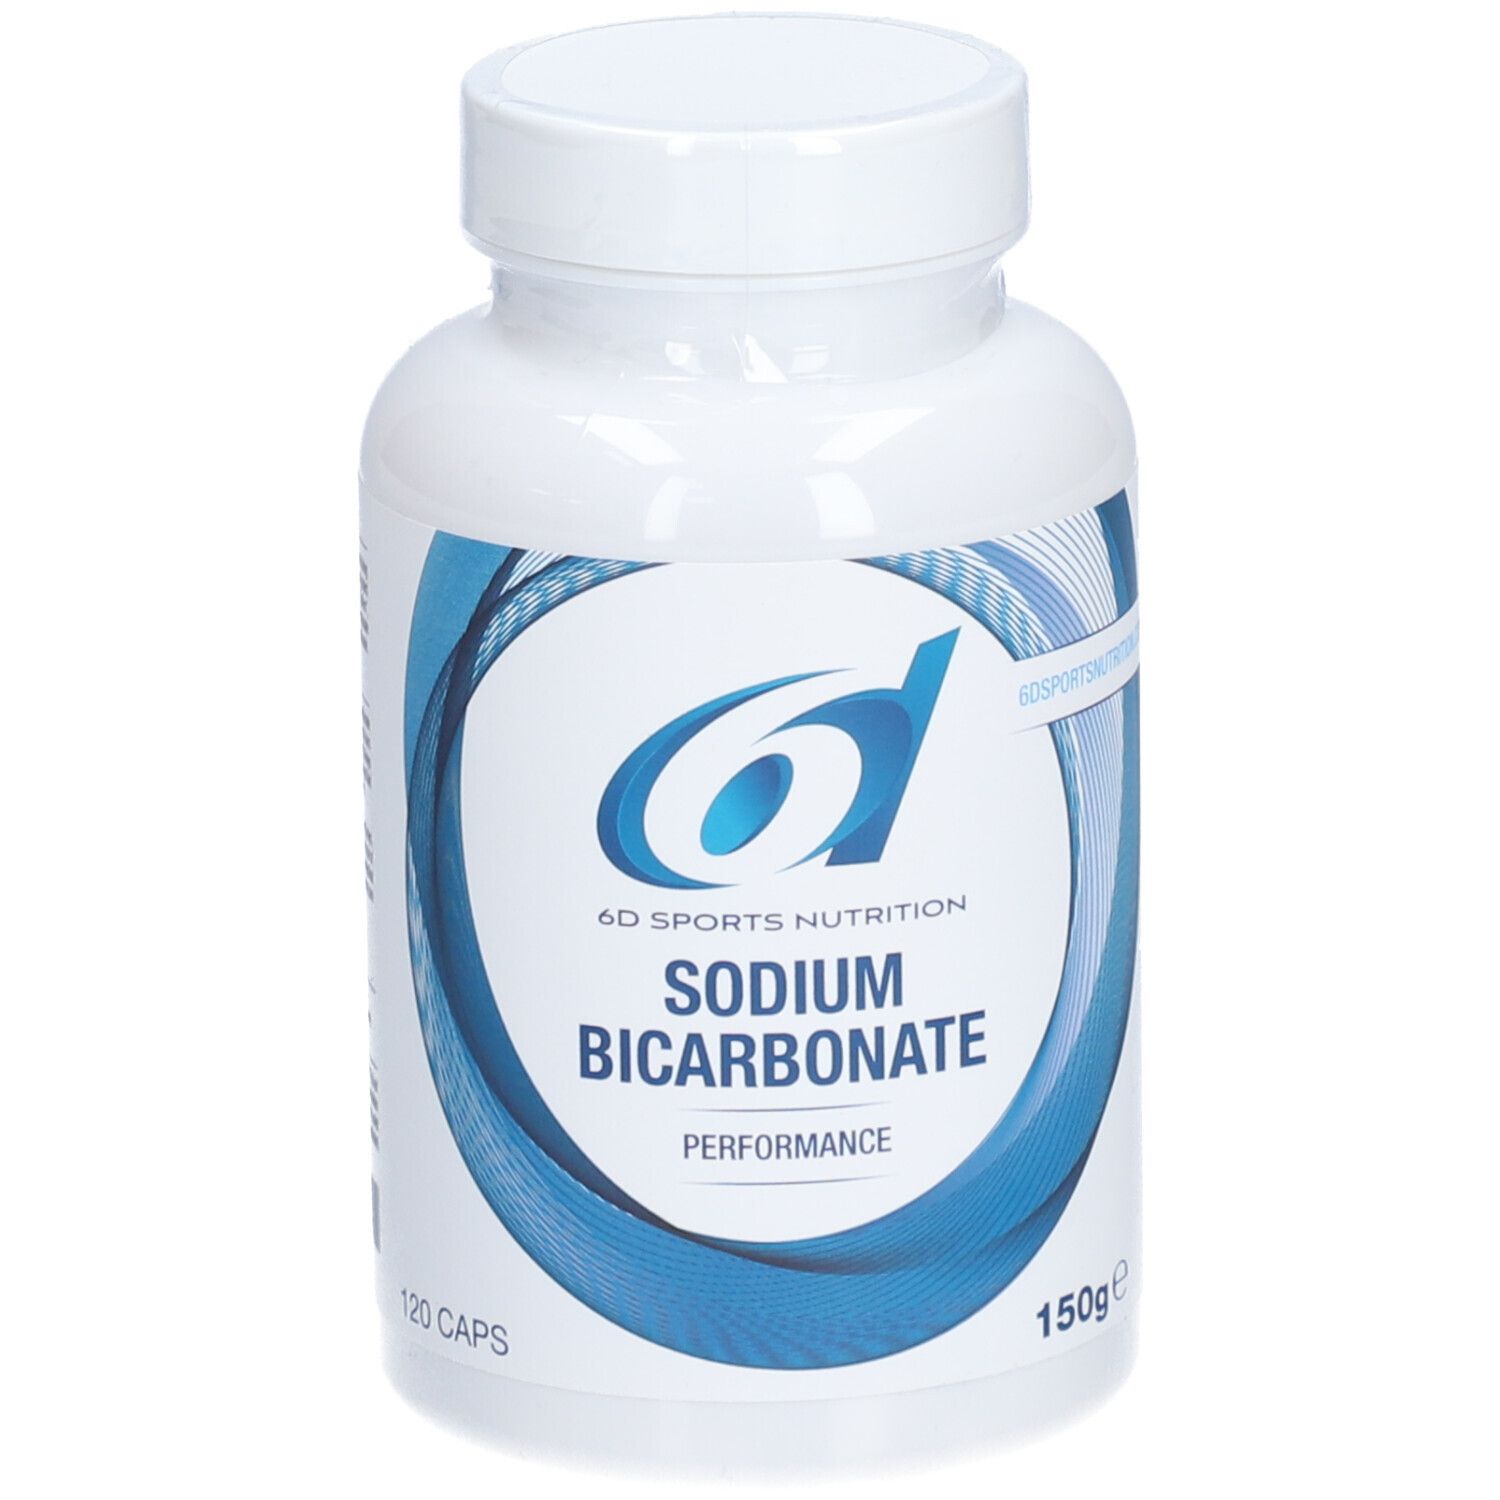 6D SPORTS NUTRITION Sodium Bicarbonate